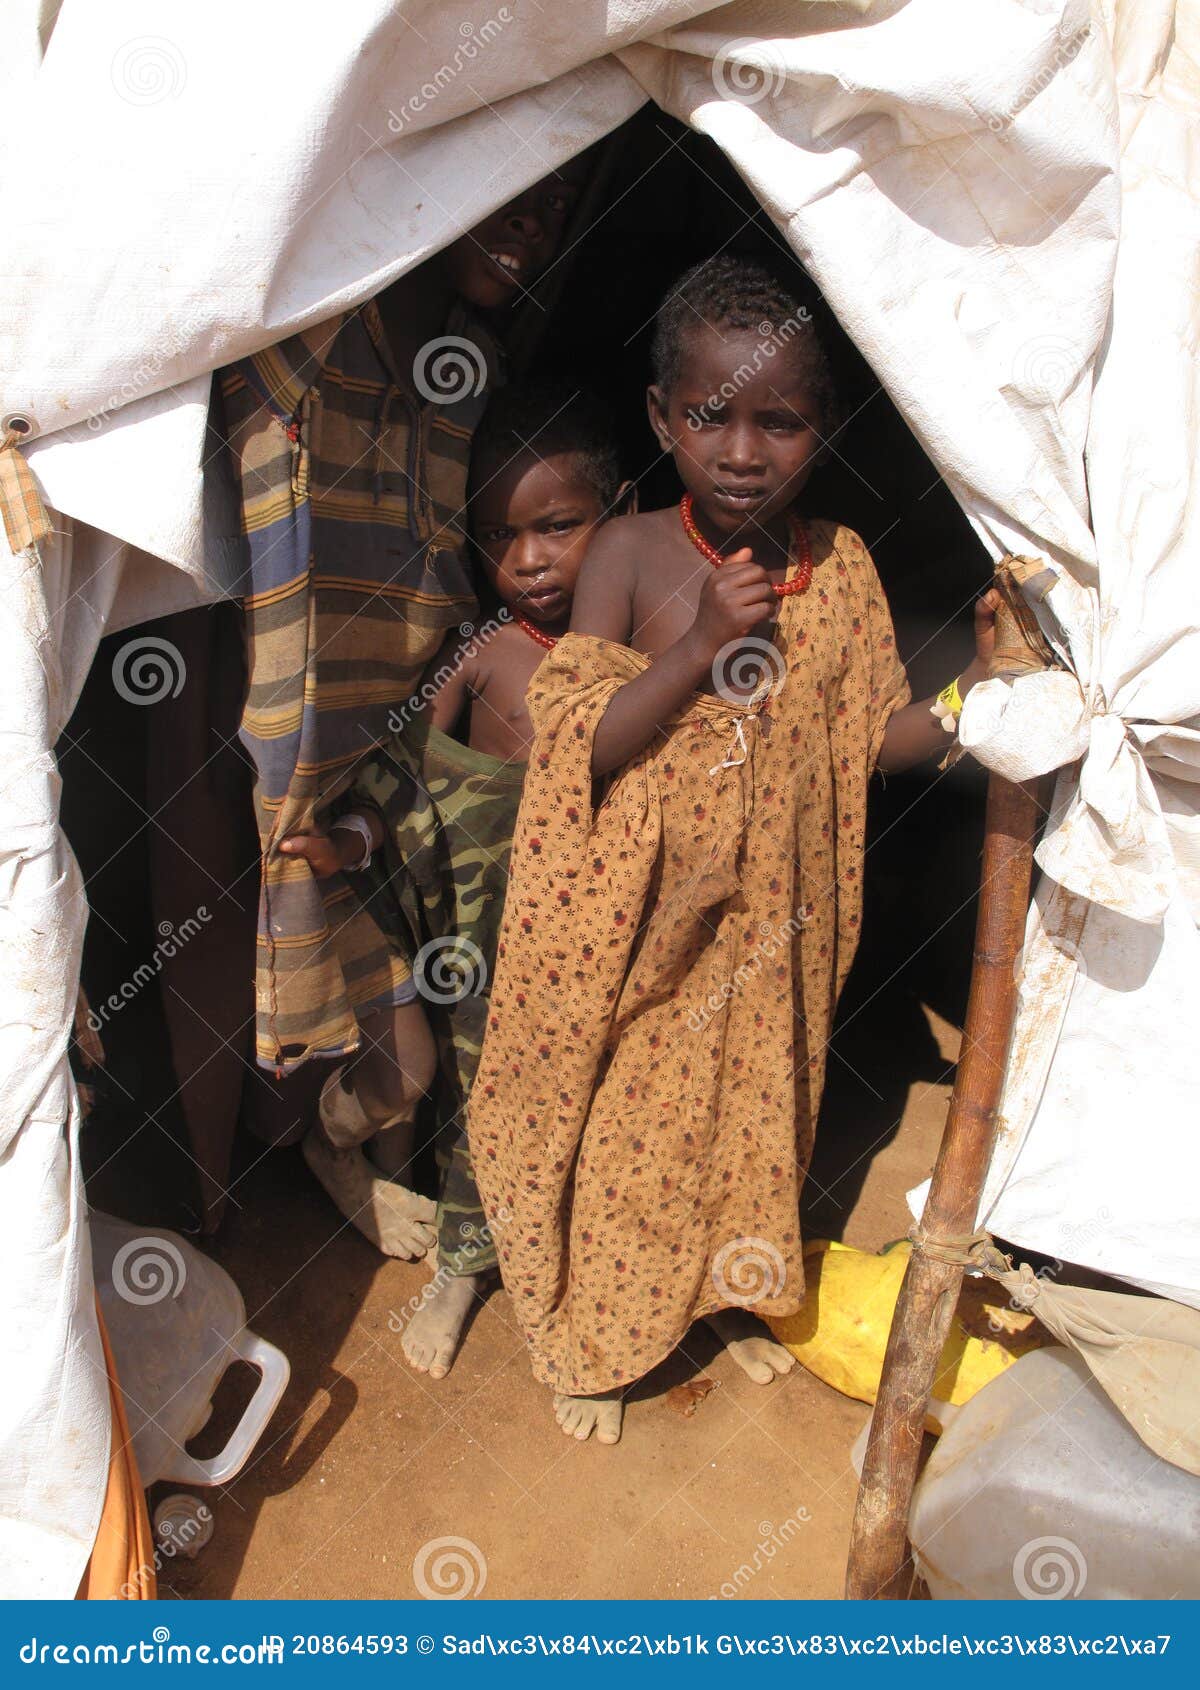 联合国：非洲之角将现大饥荒，1000多万儿童面临极端饥饿|索马里|非洲之角|联合国_新浪新闻